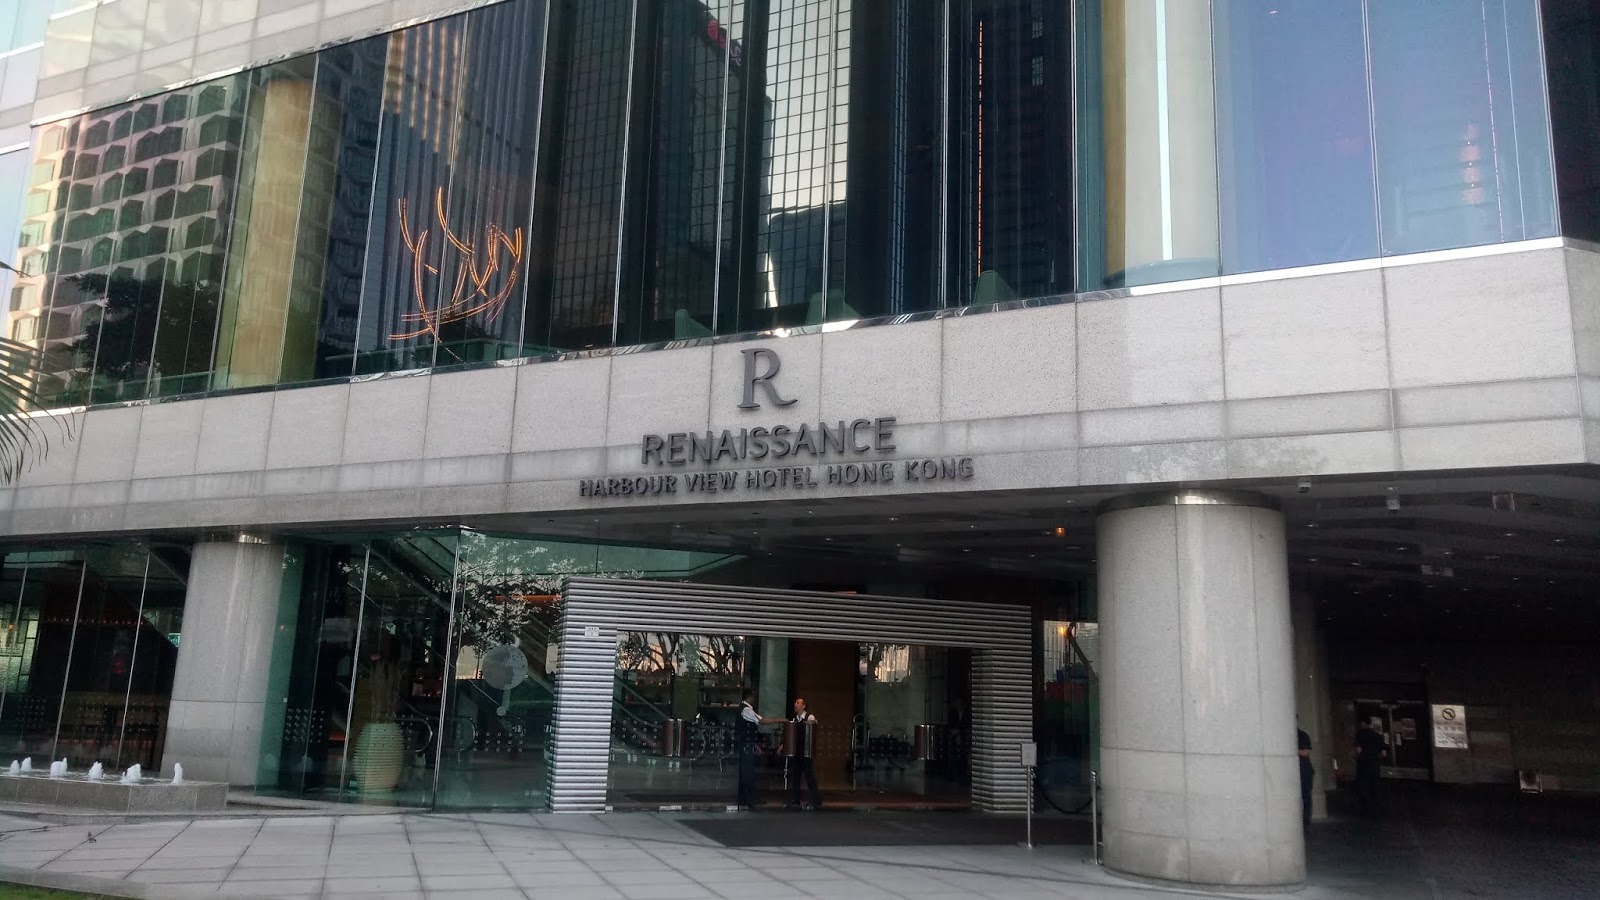 香港萬麗海景酒店 Renaissance HK